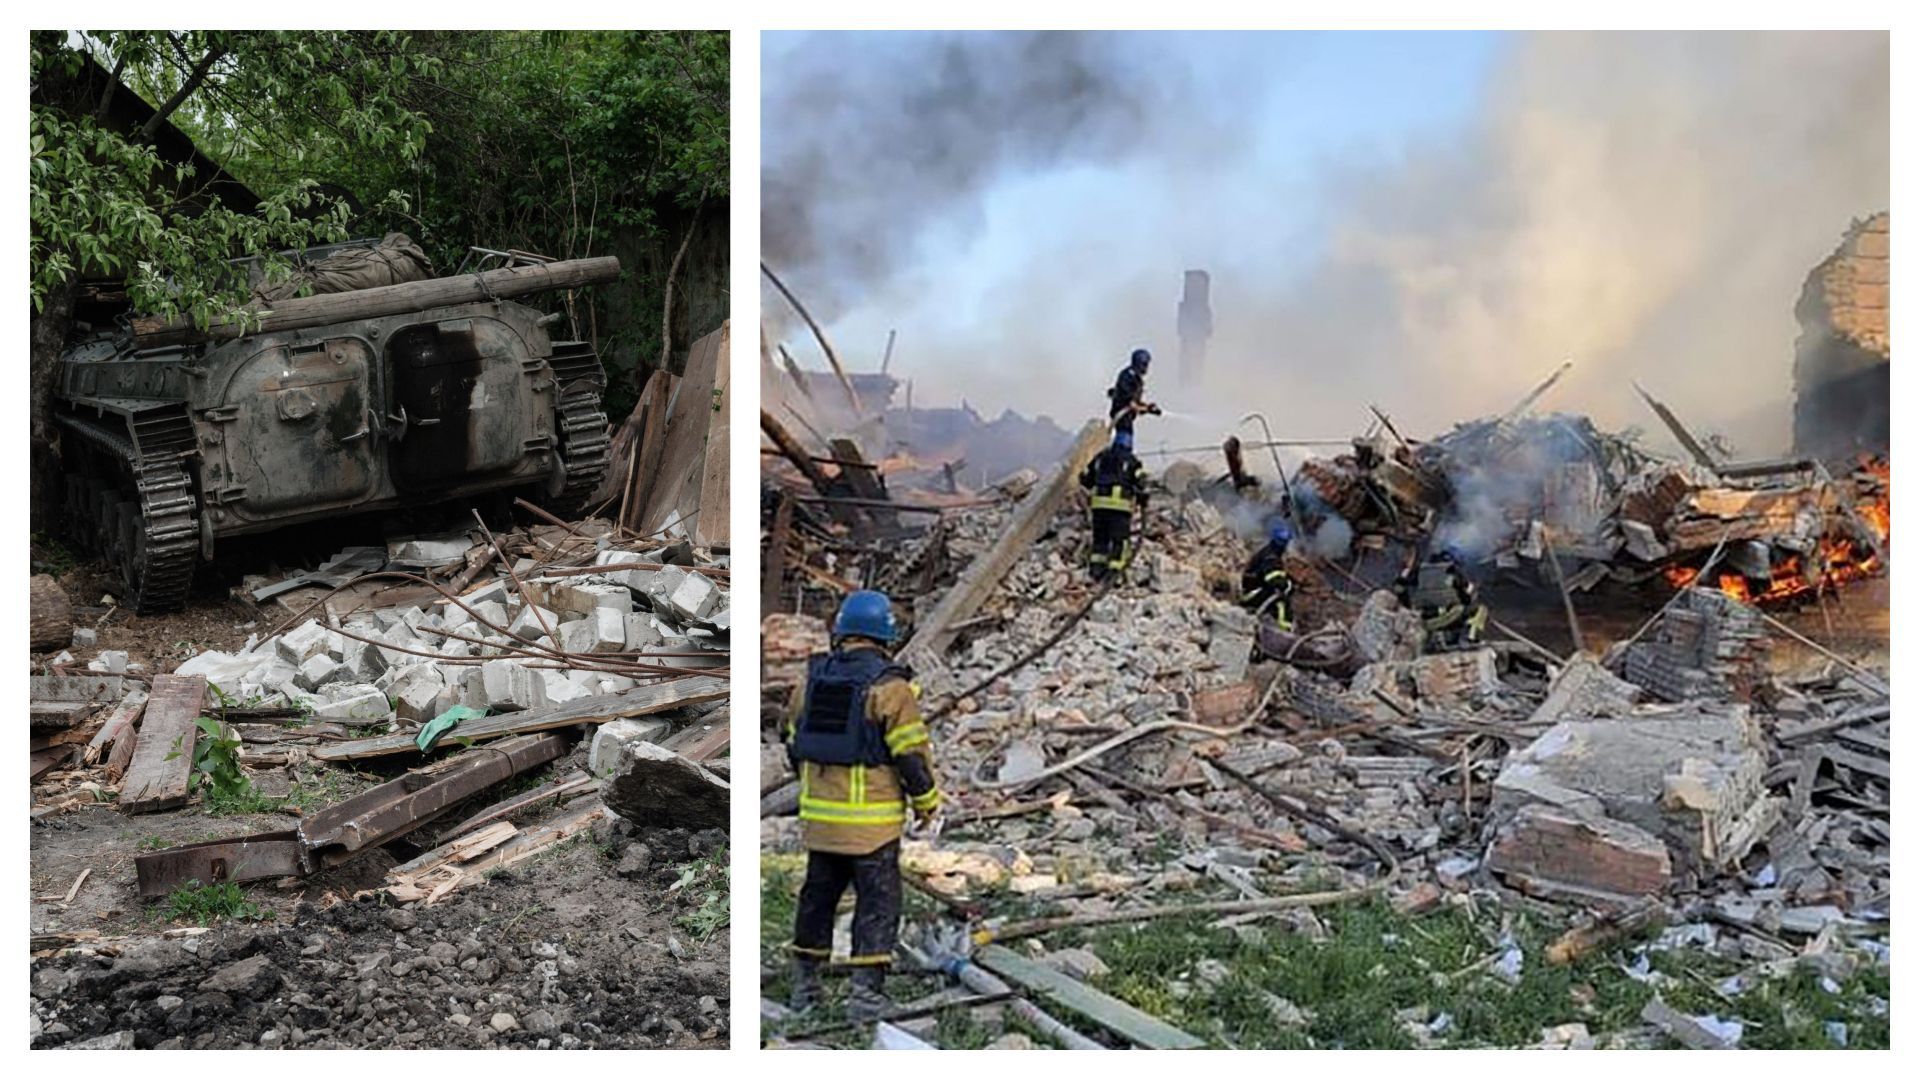 A droite, photo publiée par le Service d’urgence de l’État ukrainien, le 8 mai 2022, montre des pompiers ukrainiens en train d’éteindre un incendie après que des missiles russes ont frappé une école à Bilohorivka, dans la région de Lougansk, dans l’est de